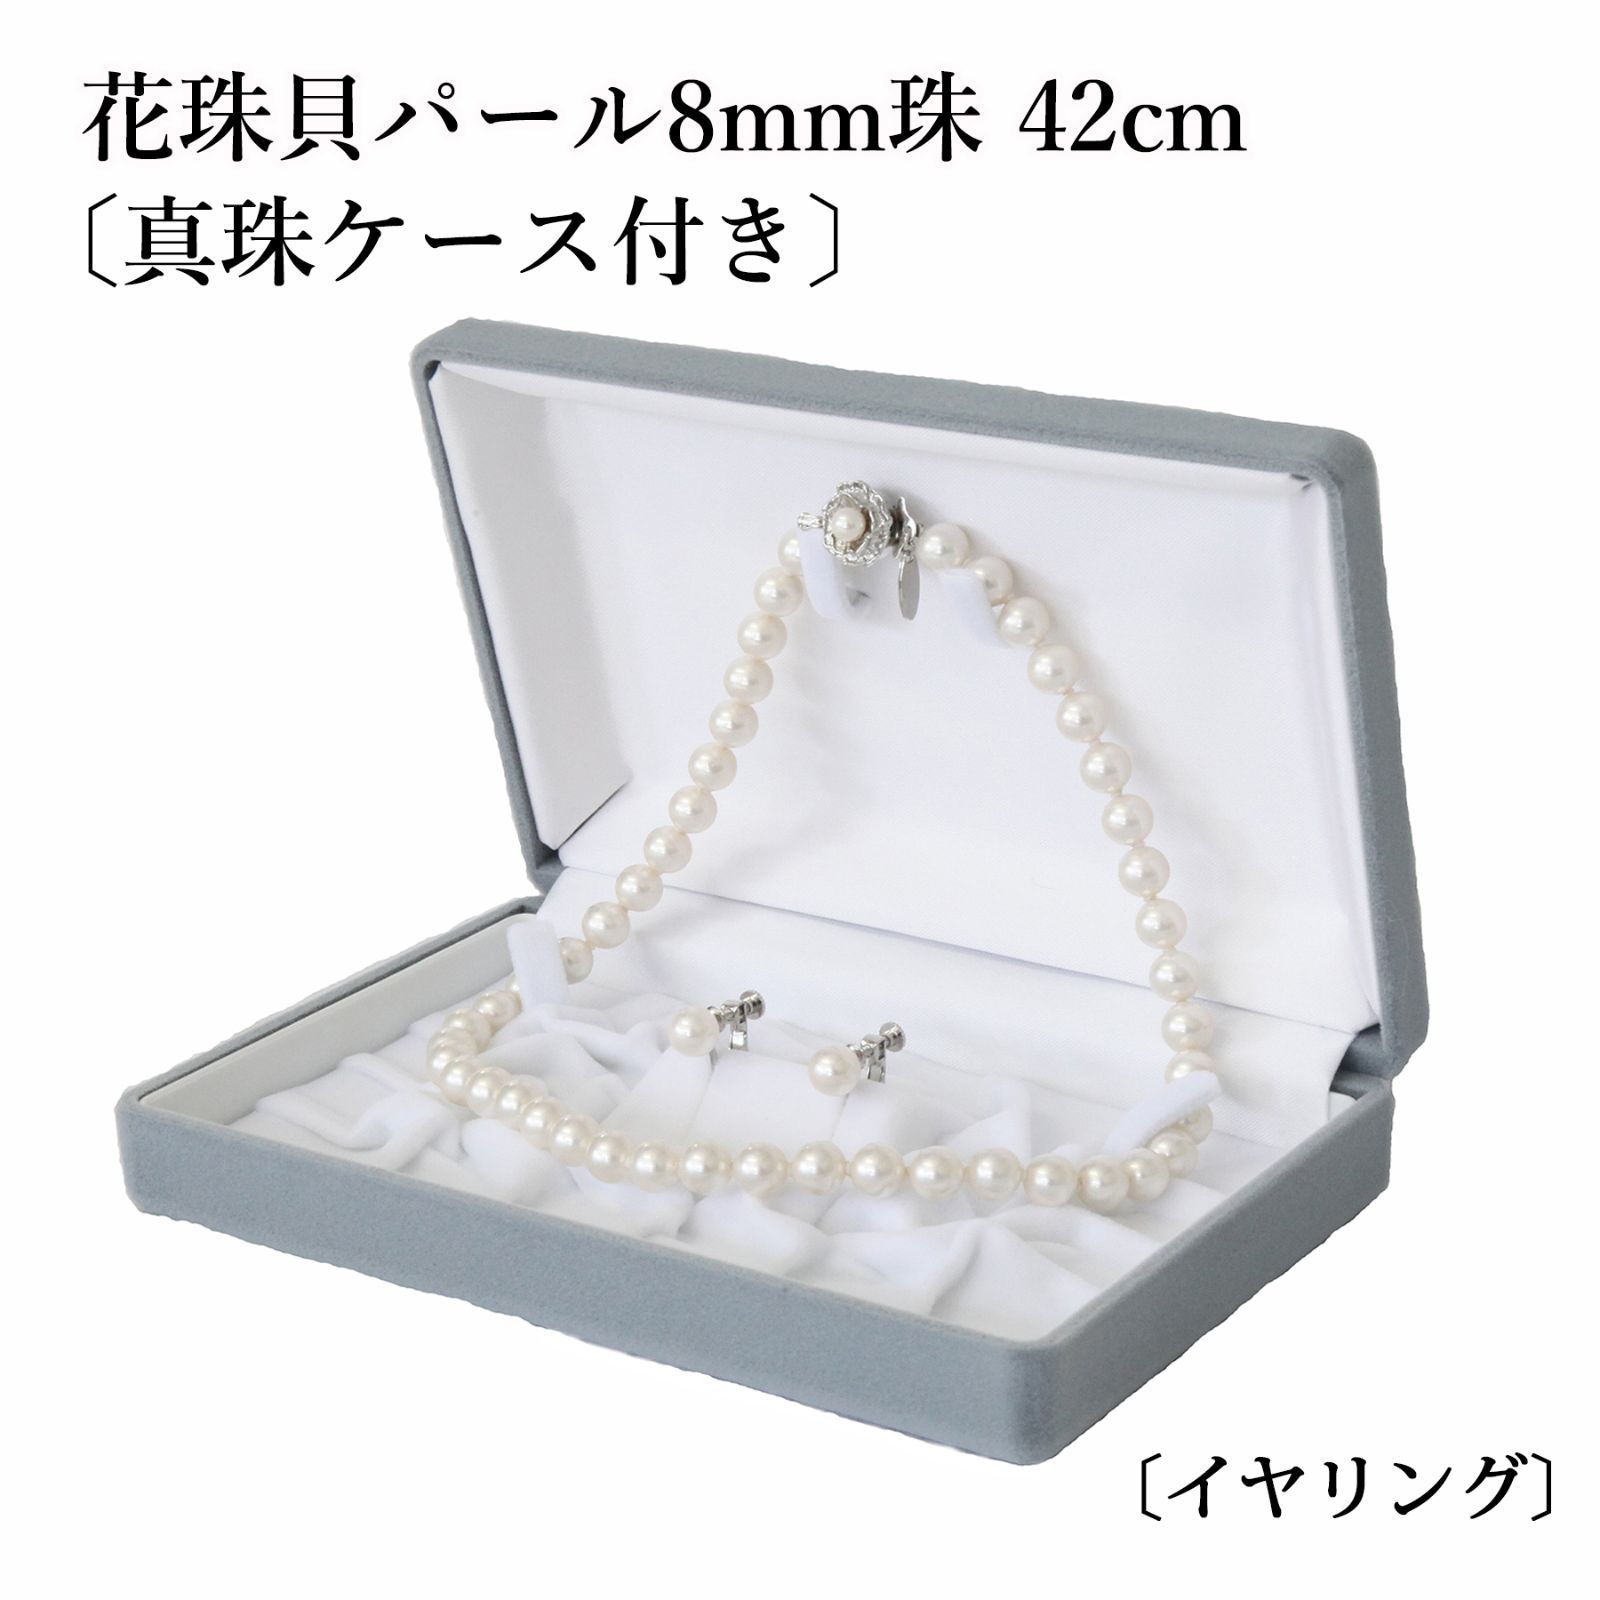 あなたと私の宝石箱] 真珠ネックレス・イヤリングセット 8.0mm珠 42cm